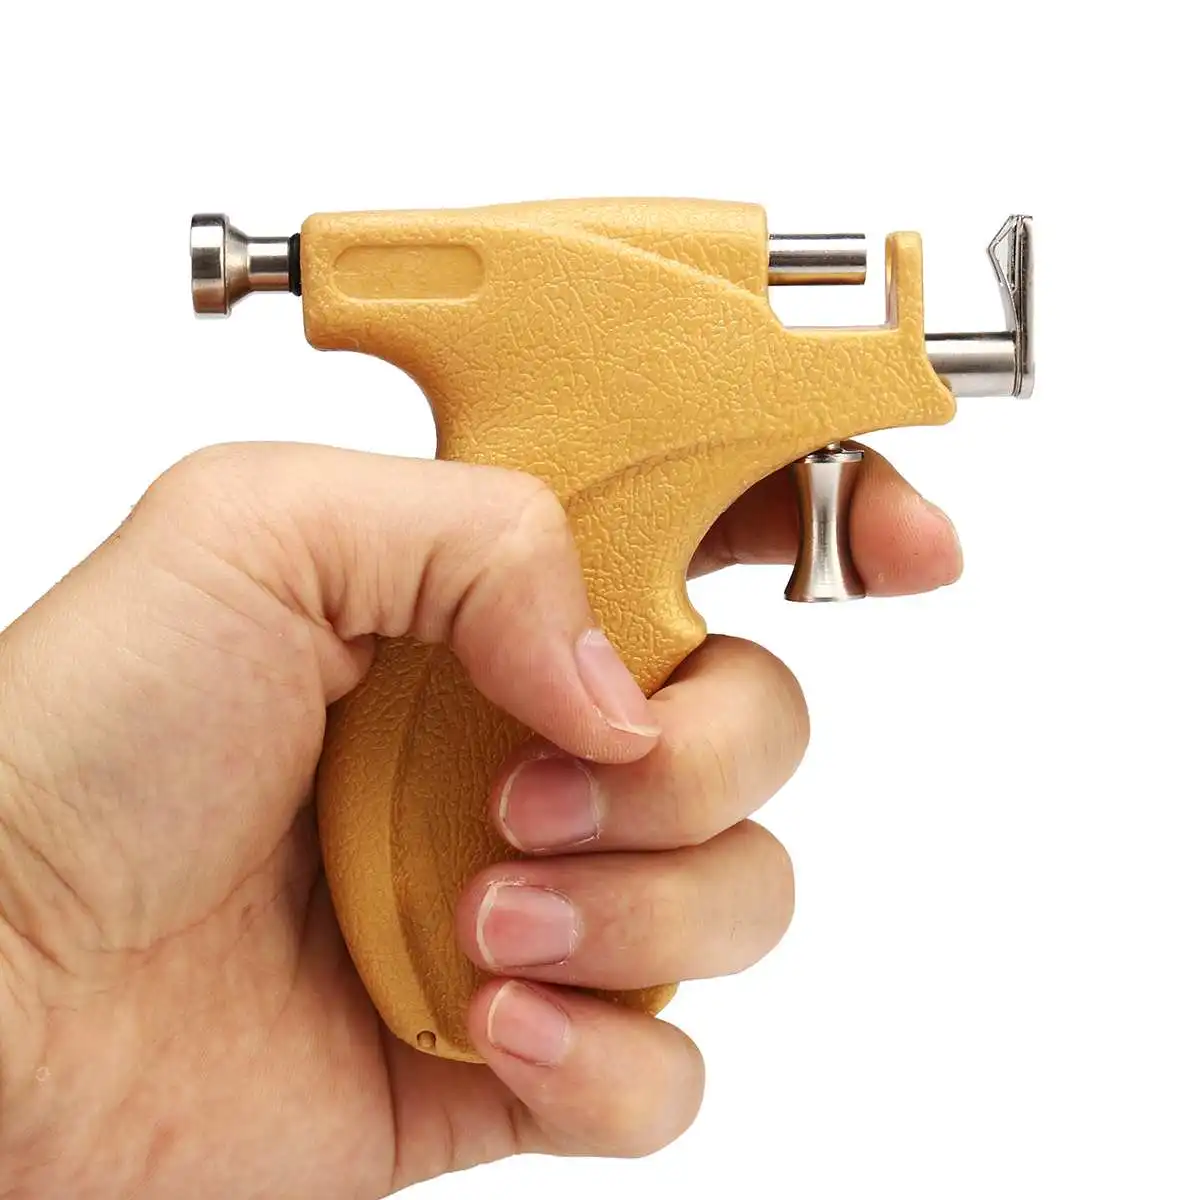 3 мм/4 мм/5 мм профессиональная серьга-гвоздик для пирсинга, набор инструментов для пирсинга, набор для пирсинга